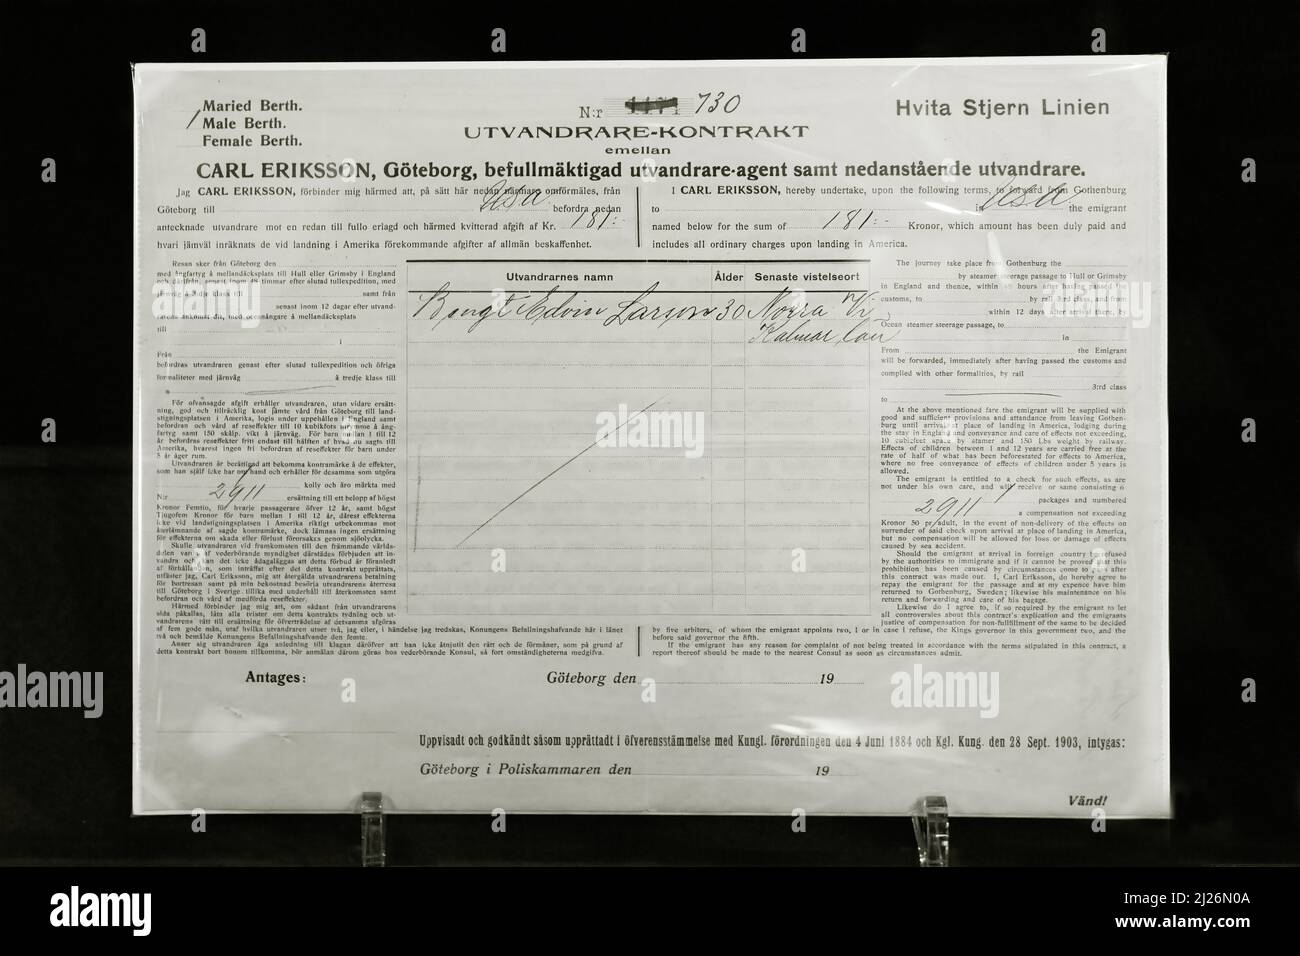 Titanic Ticket - Original Third Class Ticket von Bengt Edvin Larsson oder Larssen von Schweden, verlorener Passagier auf der Titanic; Titanic Ausstellung, London UK Stockfoto